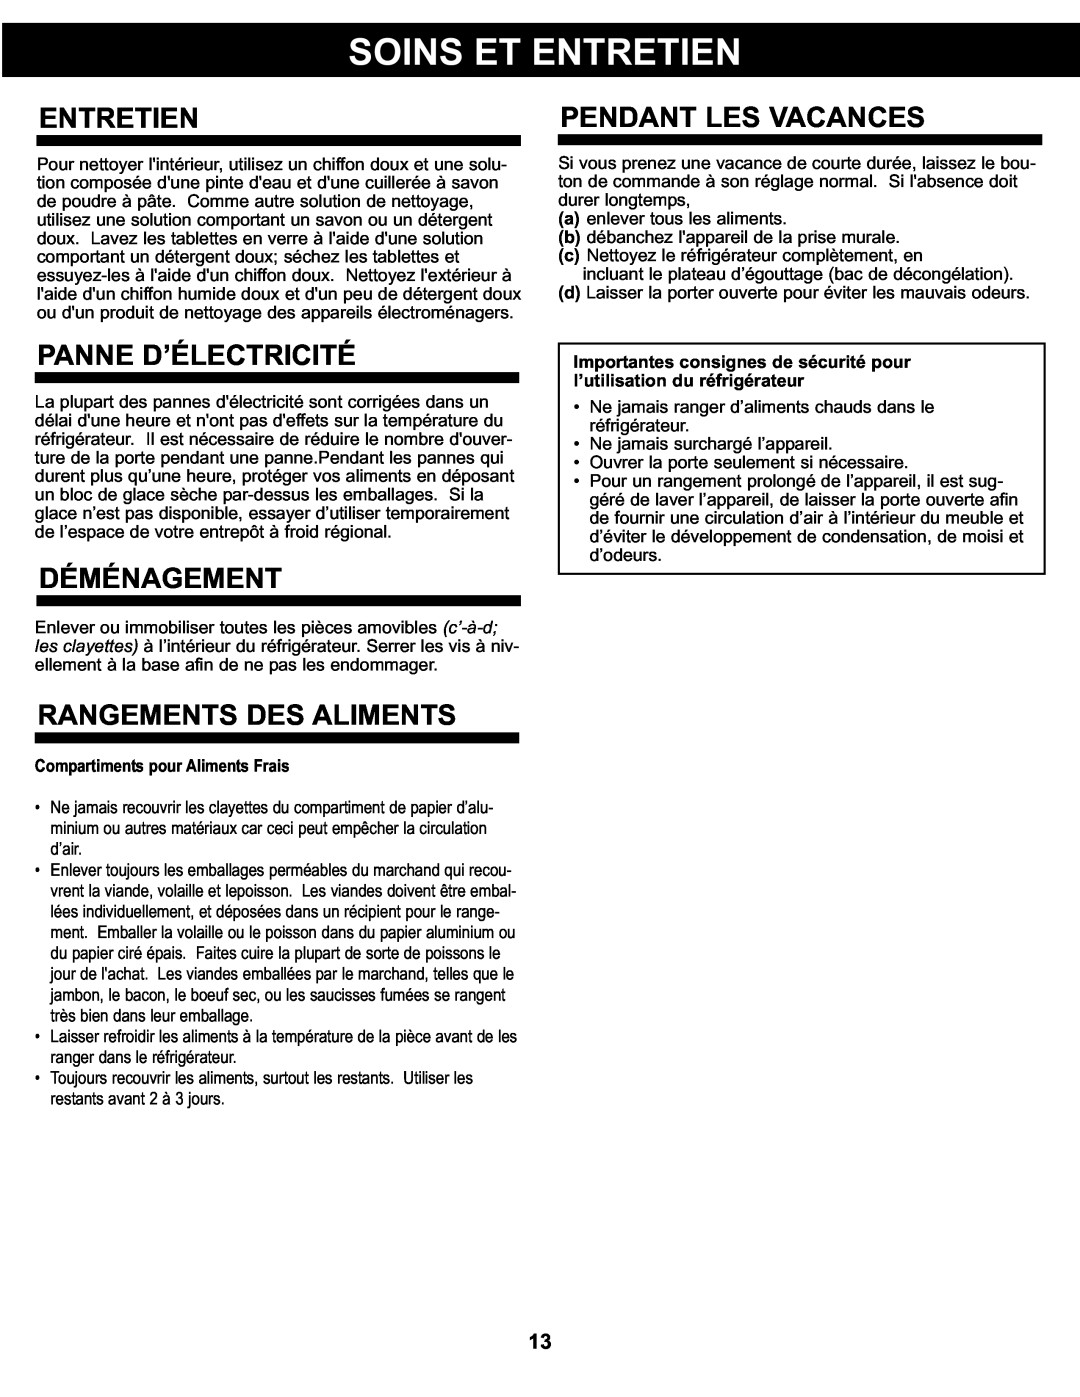 Danby DCR122BLDD manual Entretien, Panne D’Électricité, Déménagement, Rangements Des Aliments, Pendant Les Vacances 